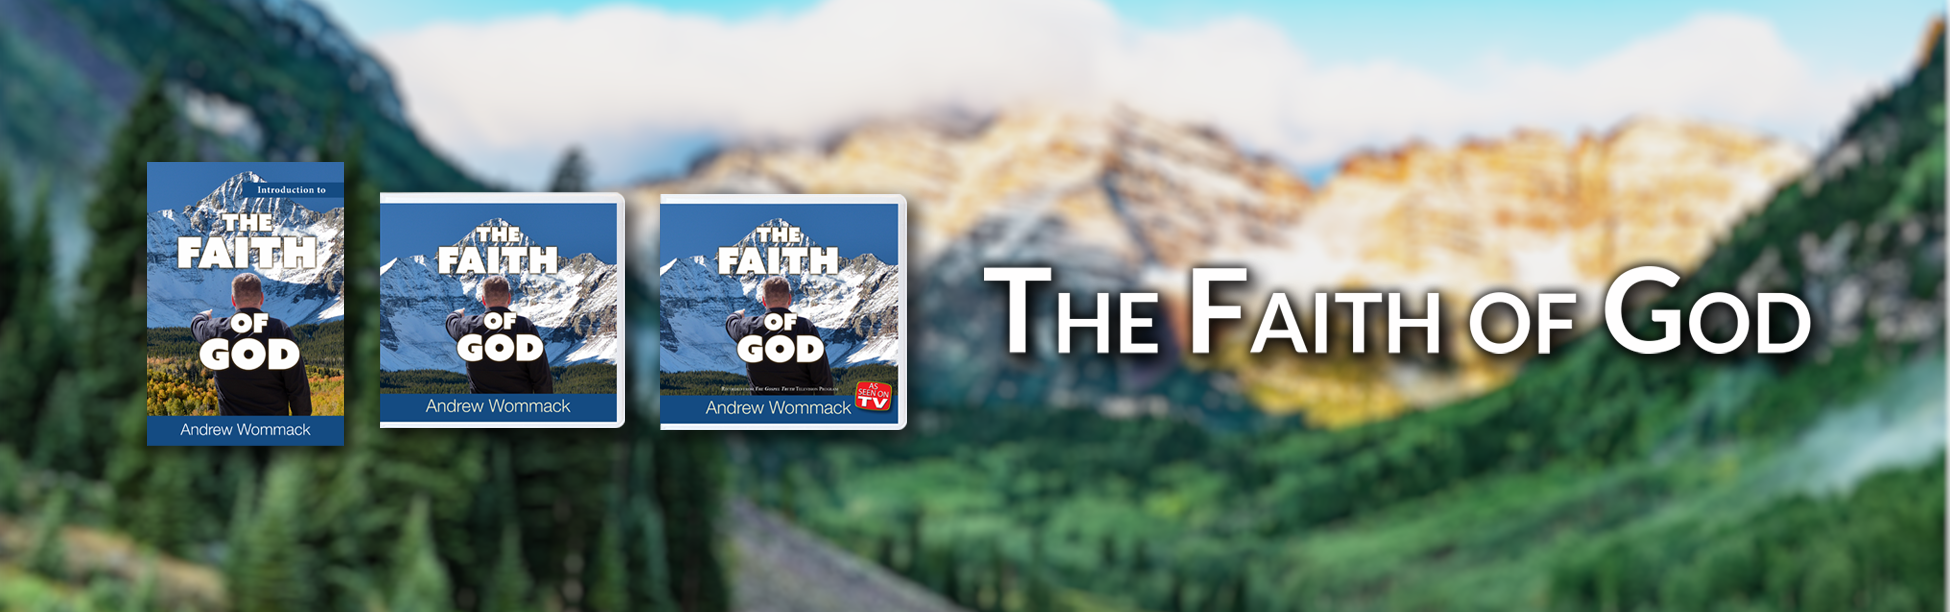 The-Faith-of-God-Website-banner